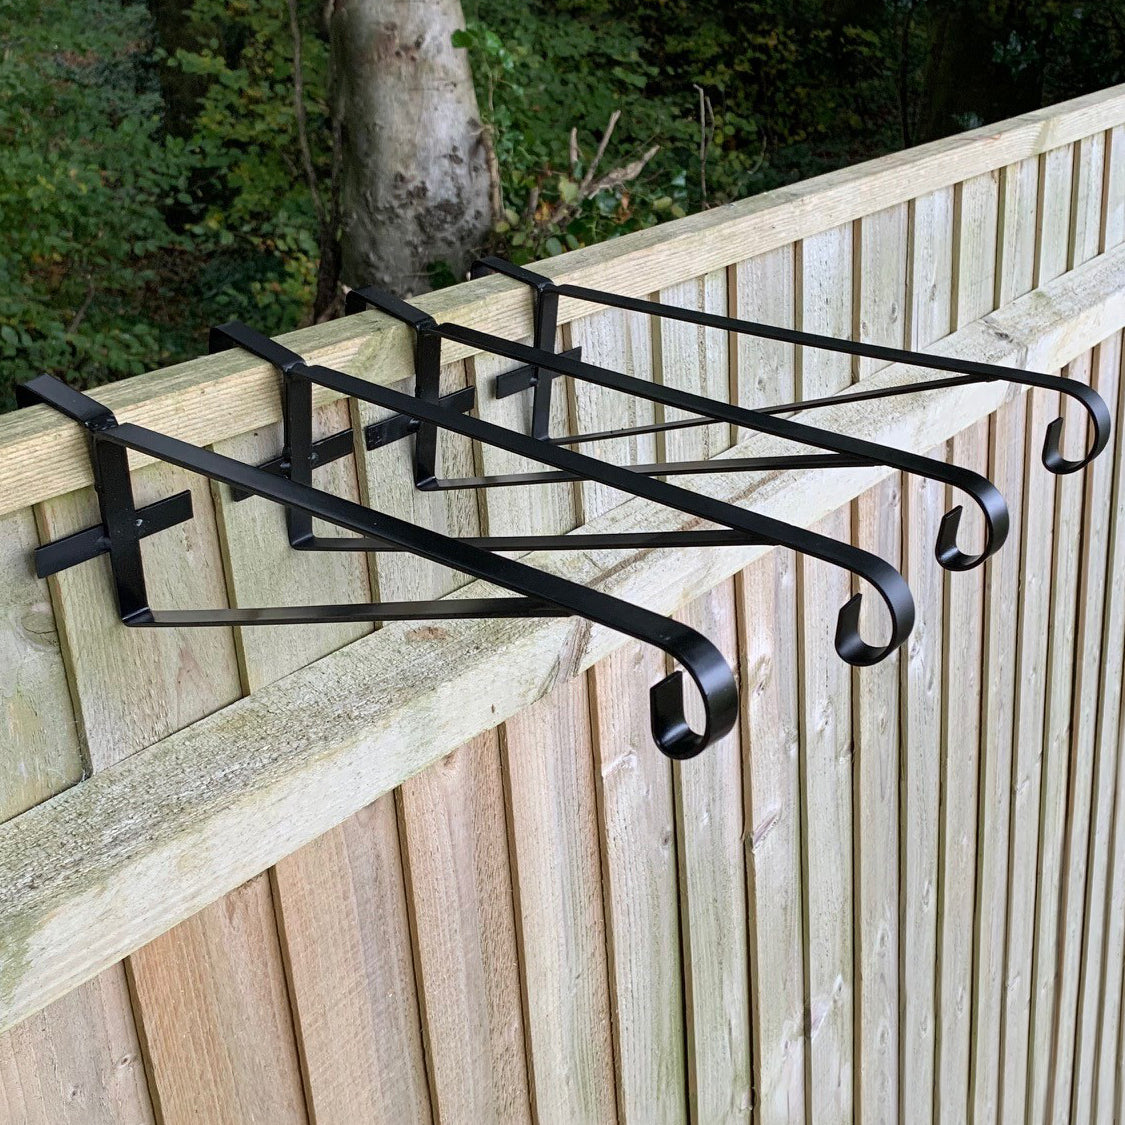 Hanging Basket Brackets for Wooden Fence Panels (Set of 4)